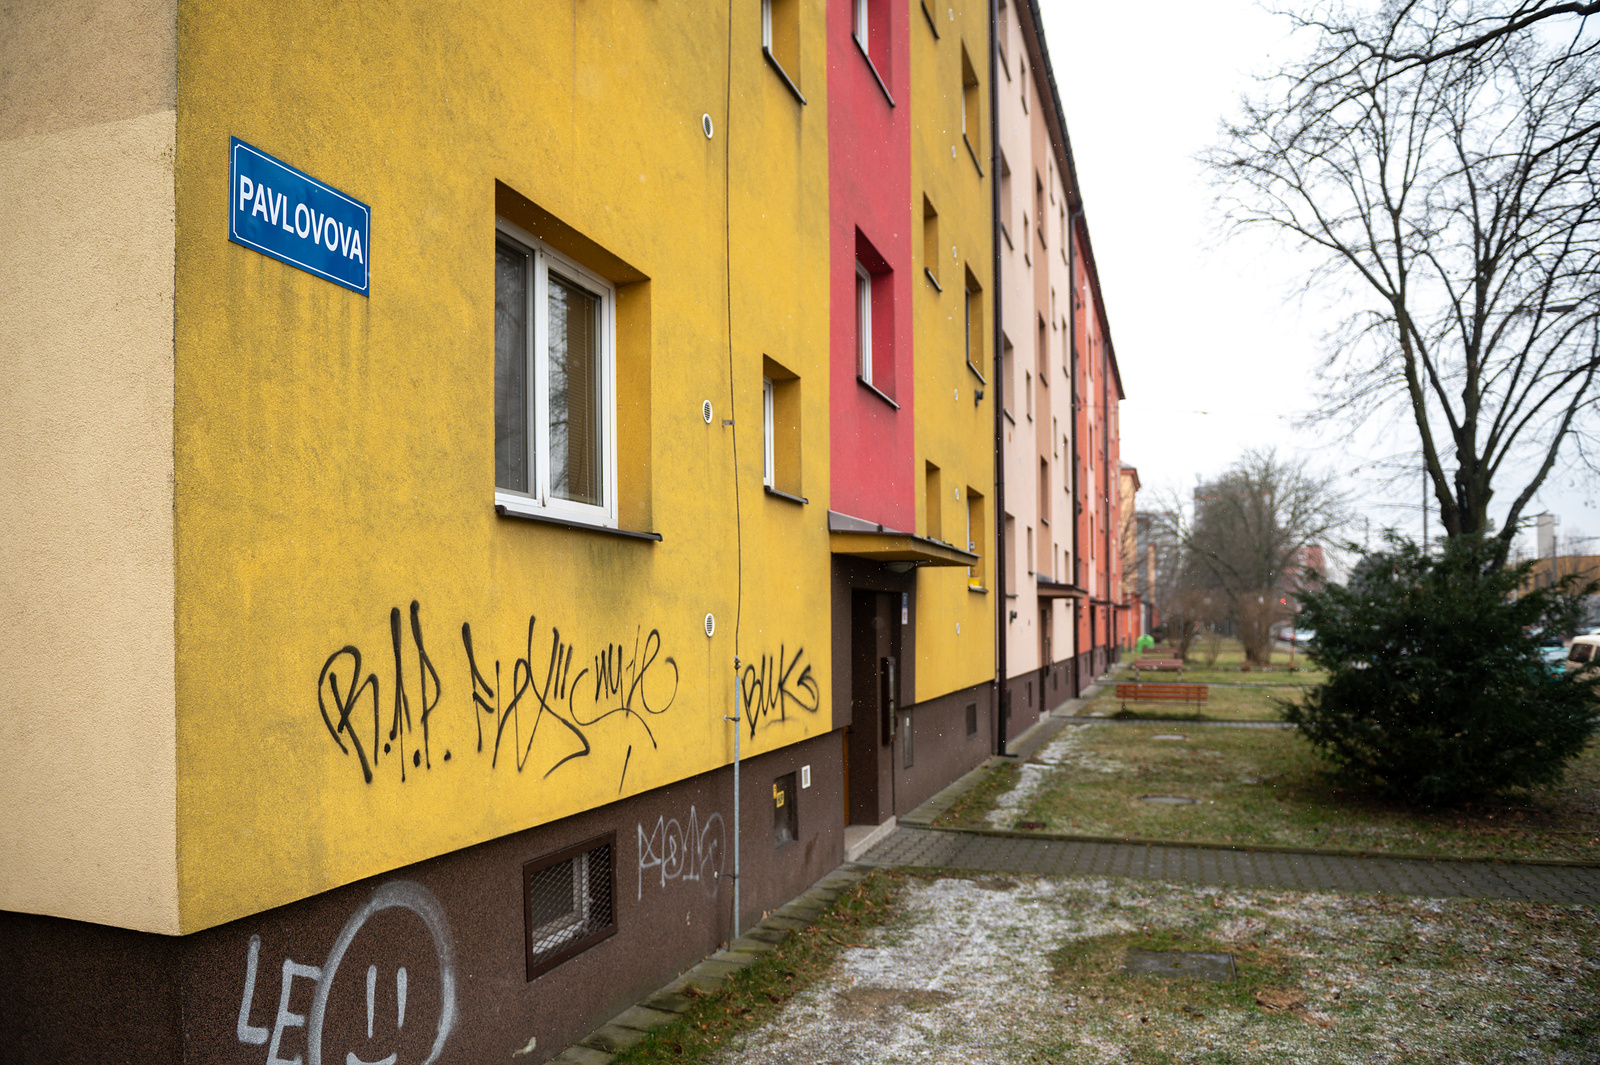 Přejmenovat ruské ulice v Ostravě? Obyvatelé nemají jasno, úřady vyčkávají  - Moravskoslezský deník